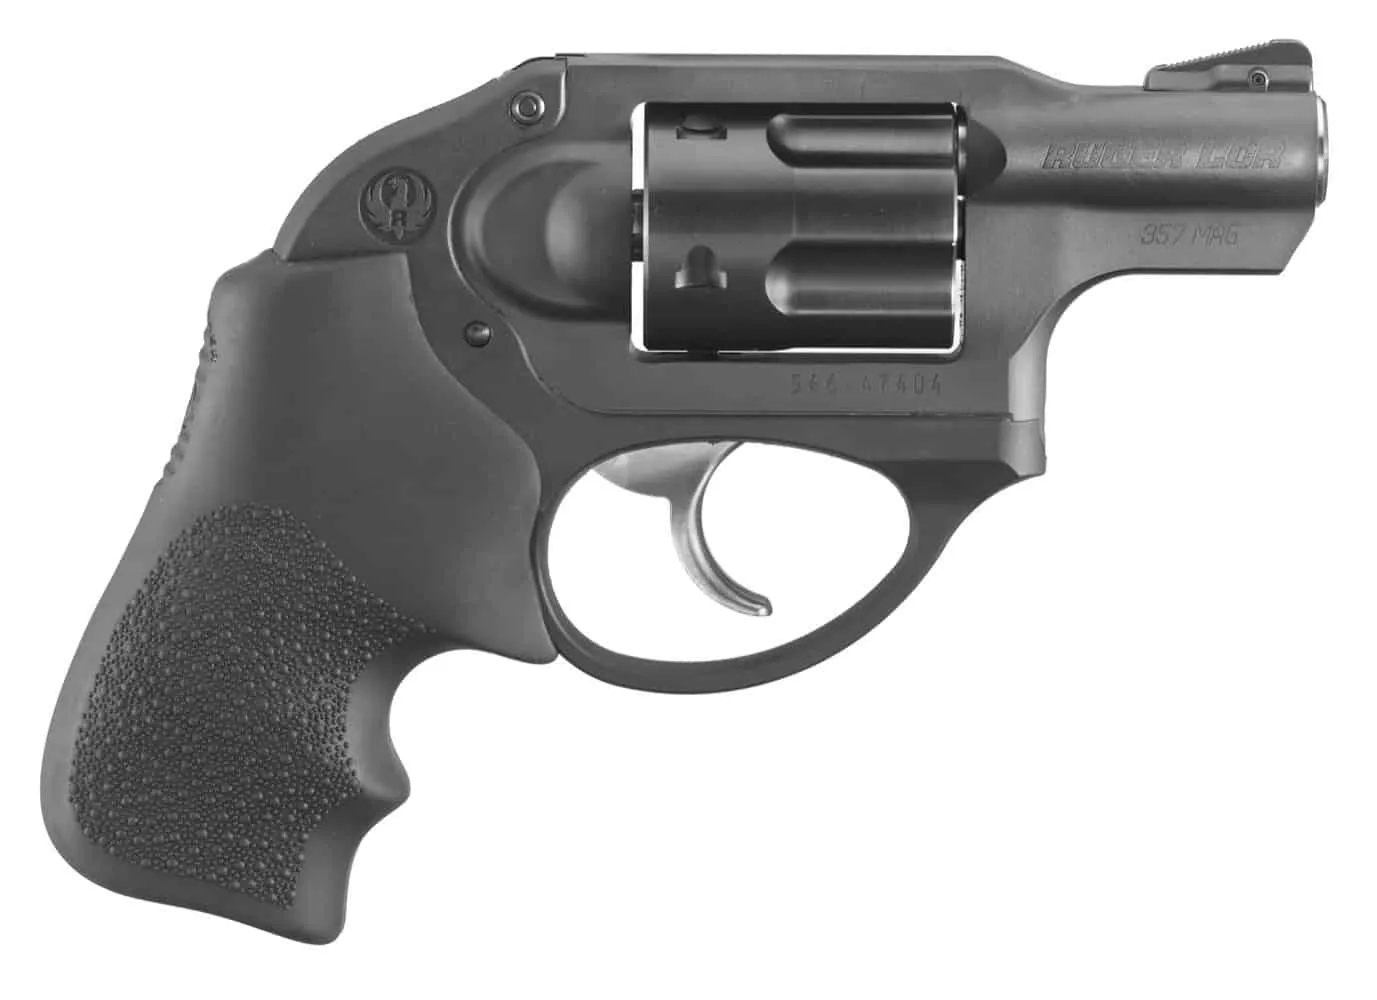 Ruger LCR 357 Revolver